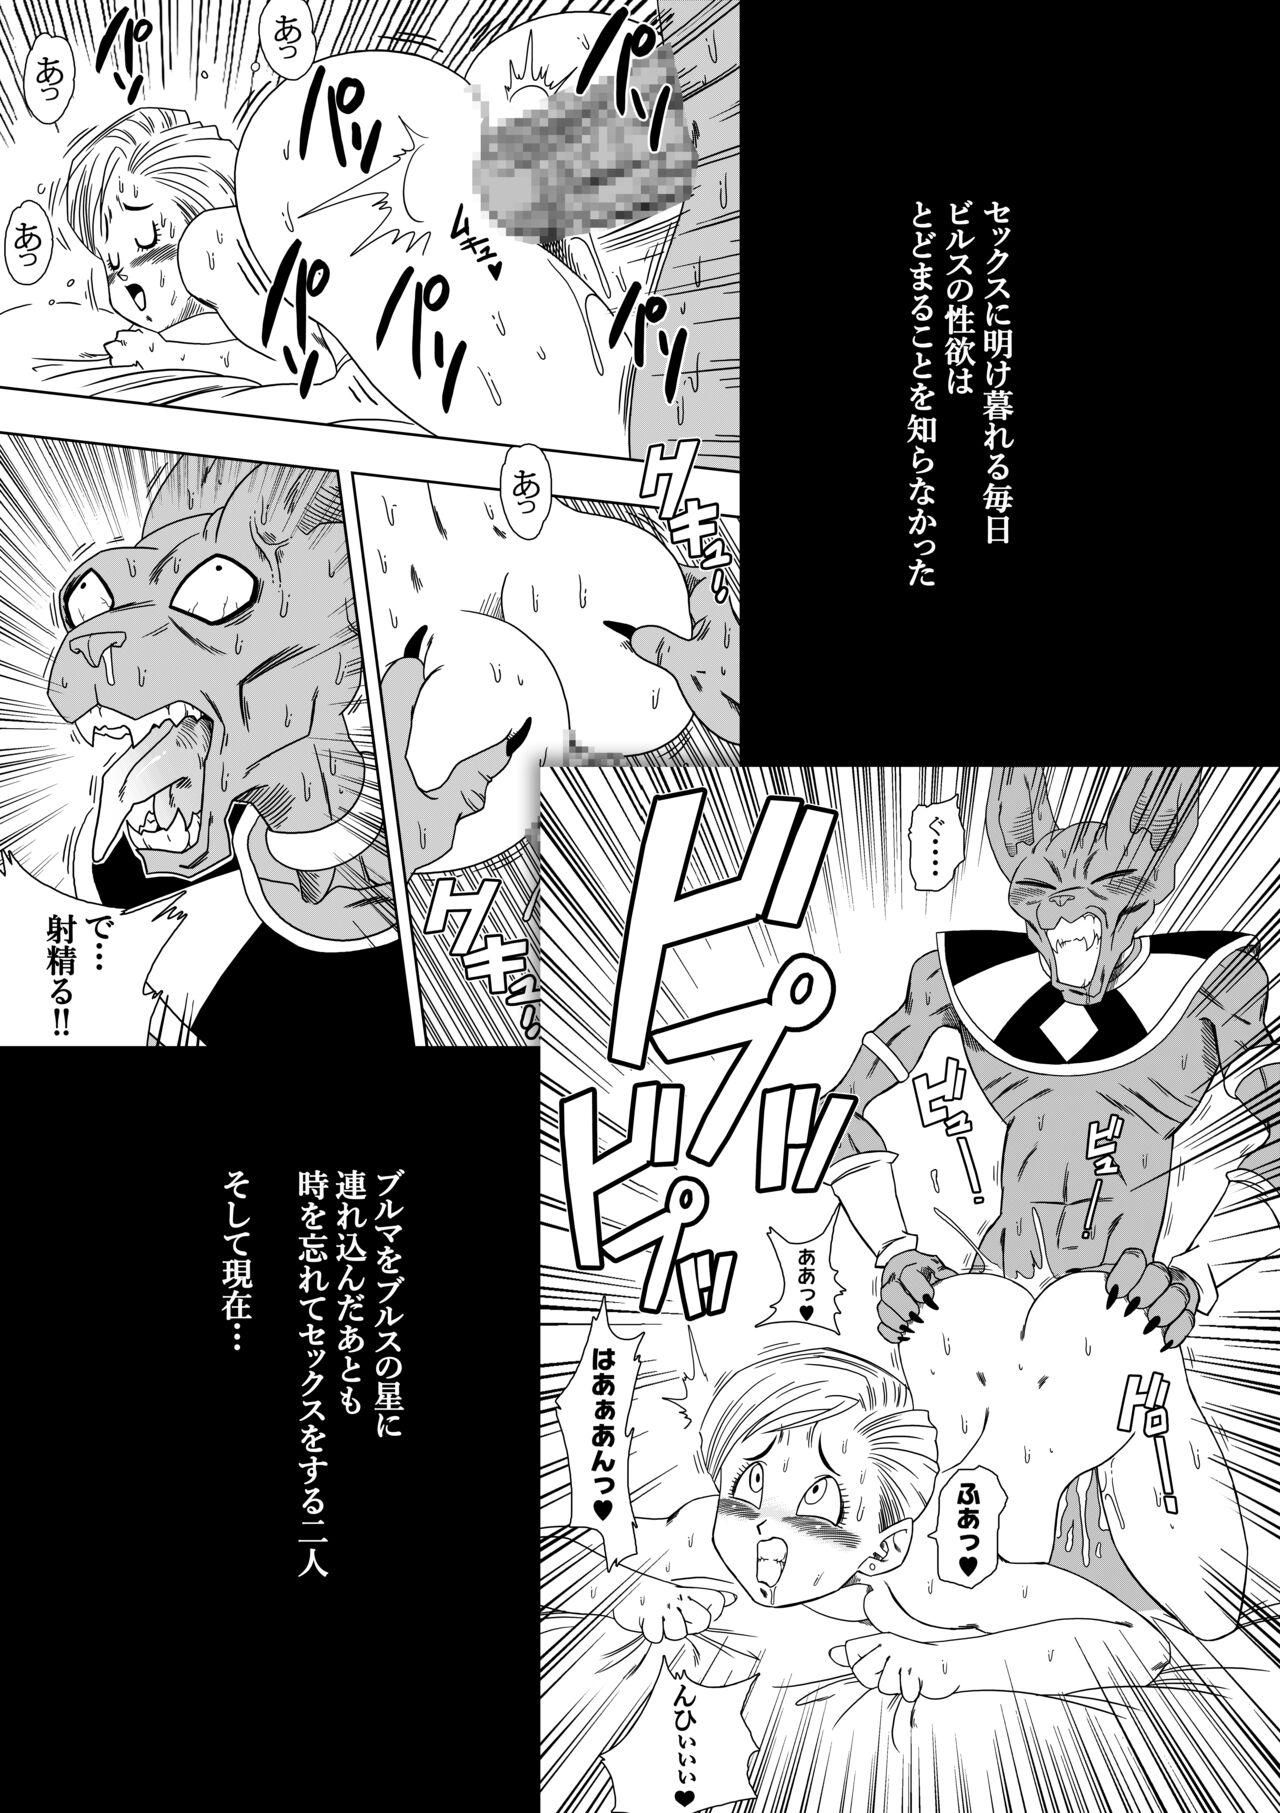 Bigtits 誰もビ○スに逆らえない! N18 VS BEERUS JAPANESE - Dragon ball Dragon ball super Thick - Page 4